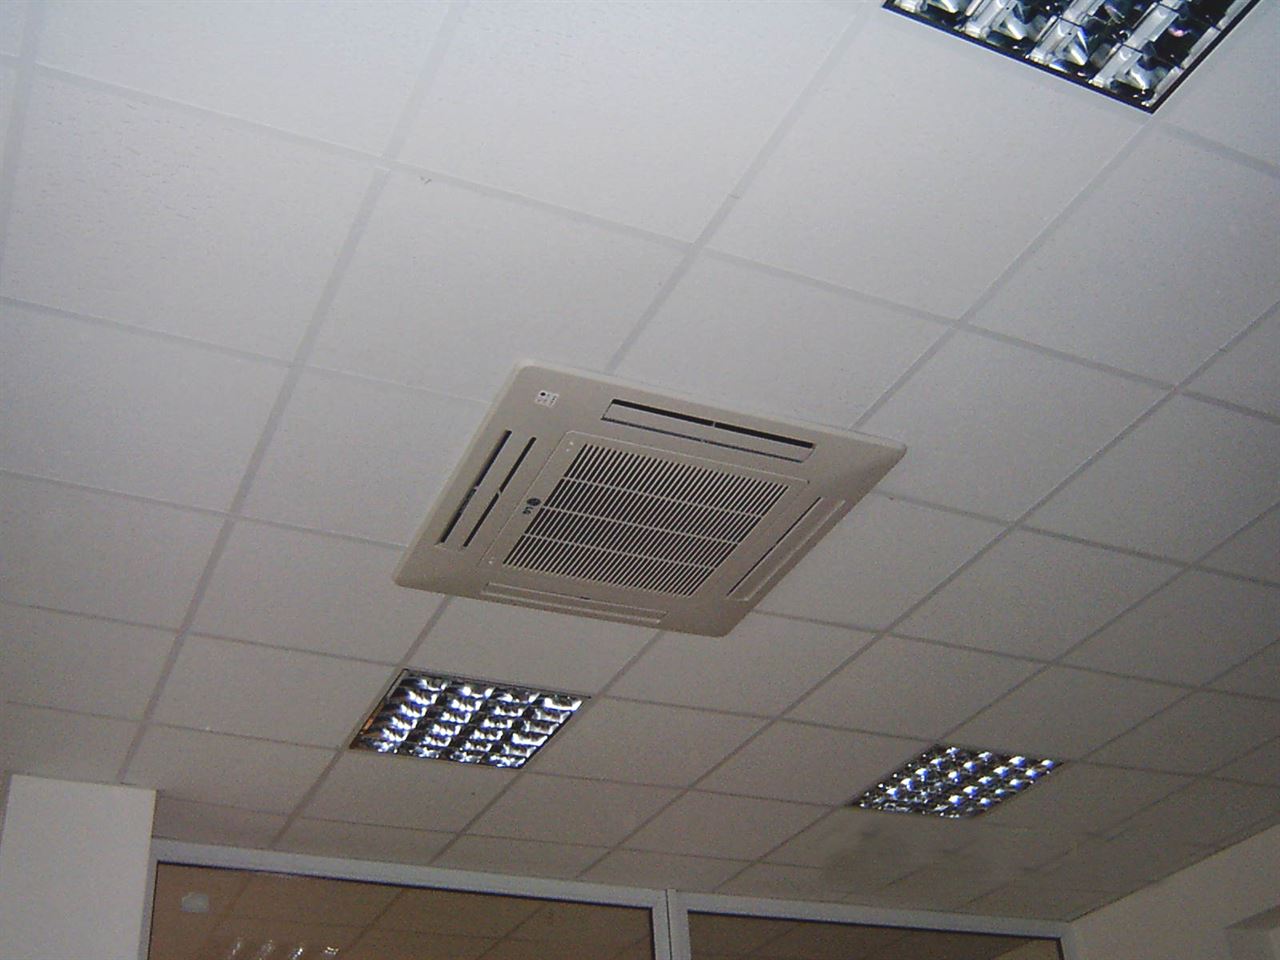 Obrázek - Kovář Servis - elektrotechnika a elektrospotřebiče, chladící a mrazící zařízení, klimatizace